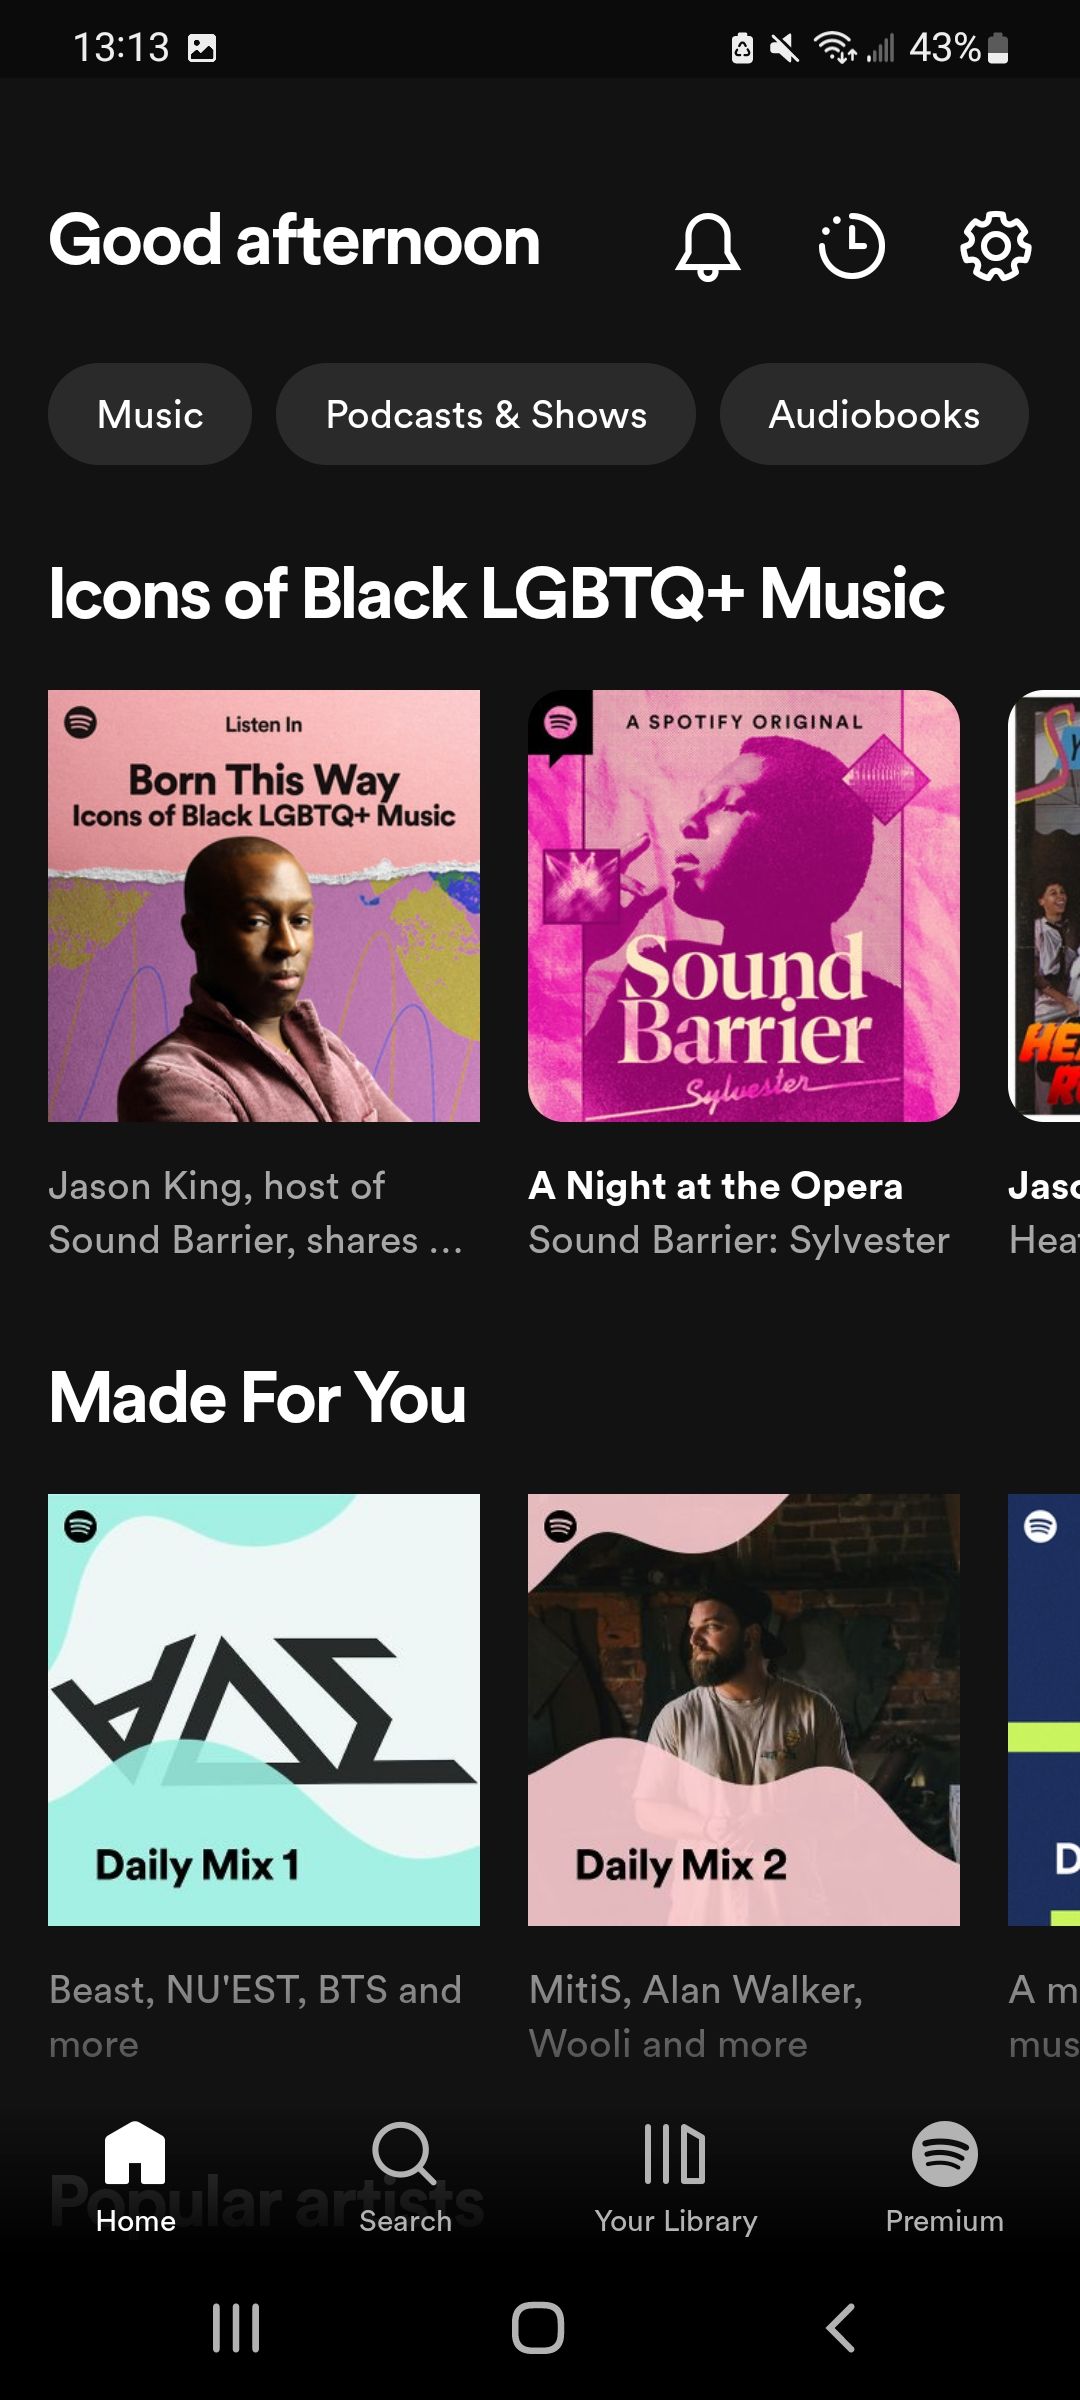 Captura de tela da aba principal do aplicativo no Spotify para Android.  A tela exibe uma mensagem de ‘Boa tarde’ e mostra diversos álbuns e playlists.